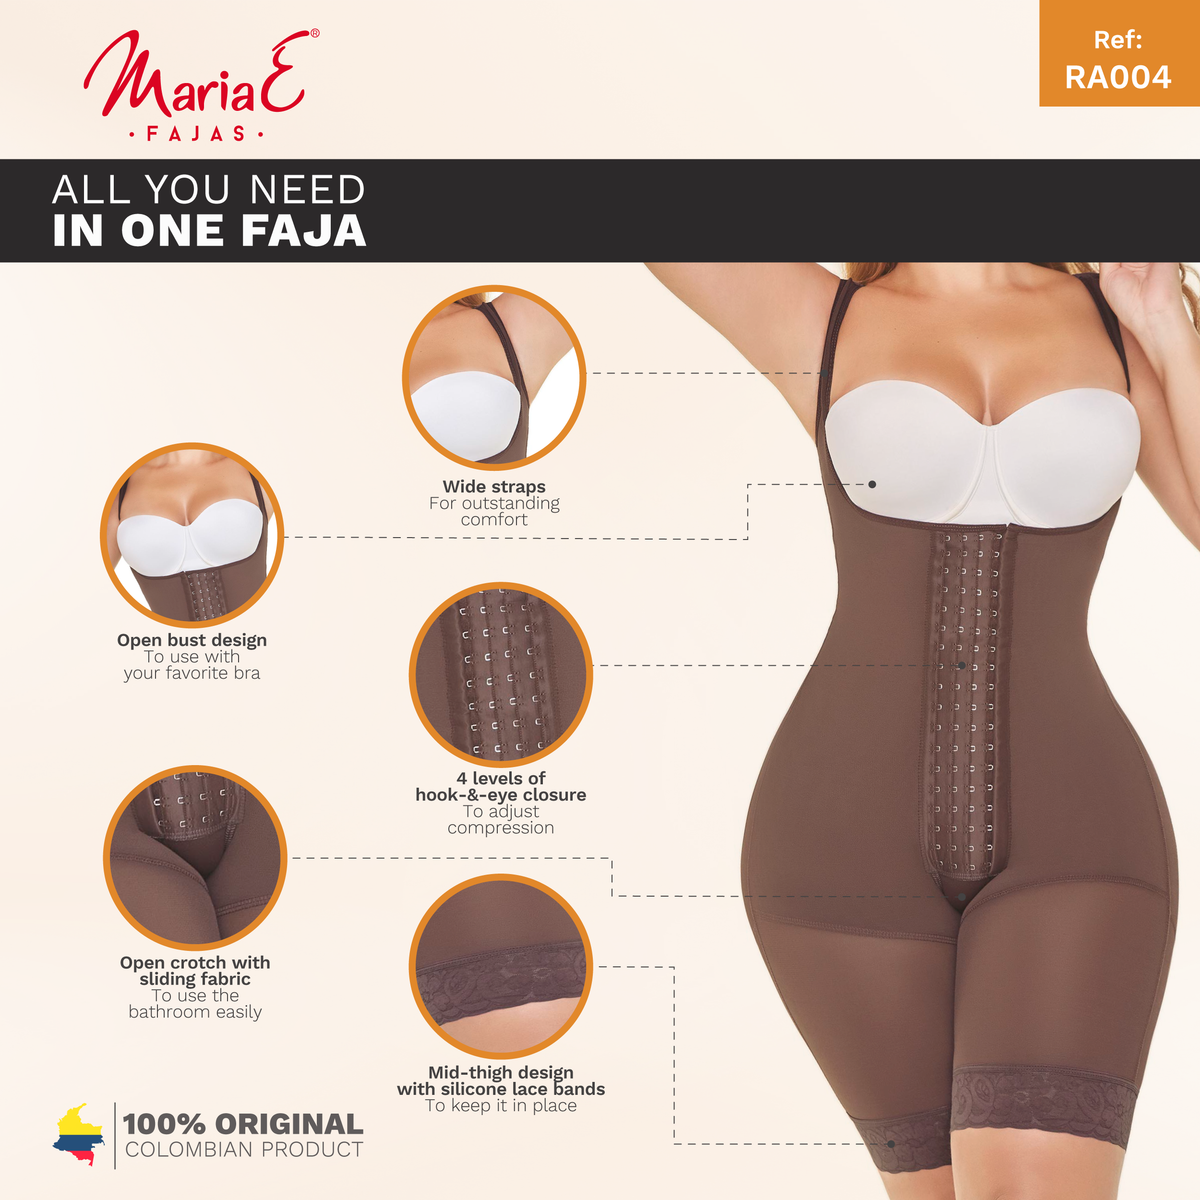 Fajas MariaE RA005 | Fajas Colombianas Butt-lifter Shapewear for Women